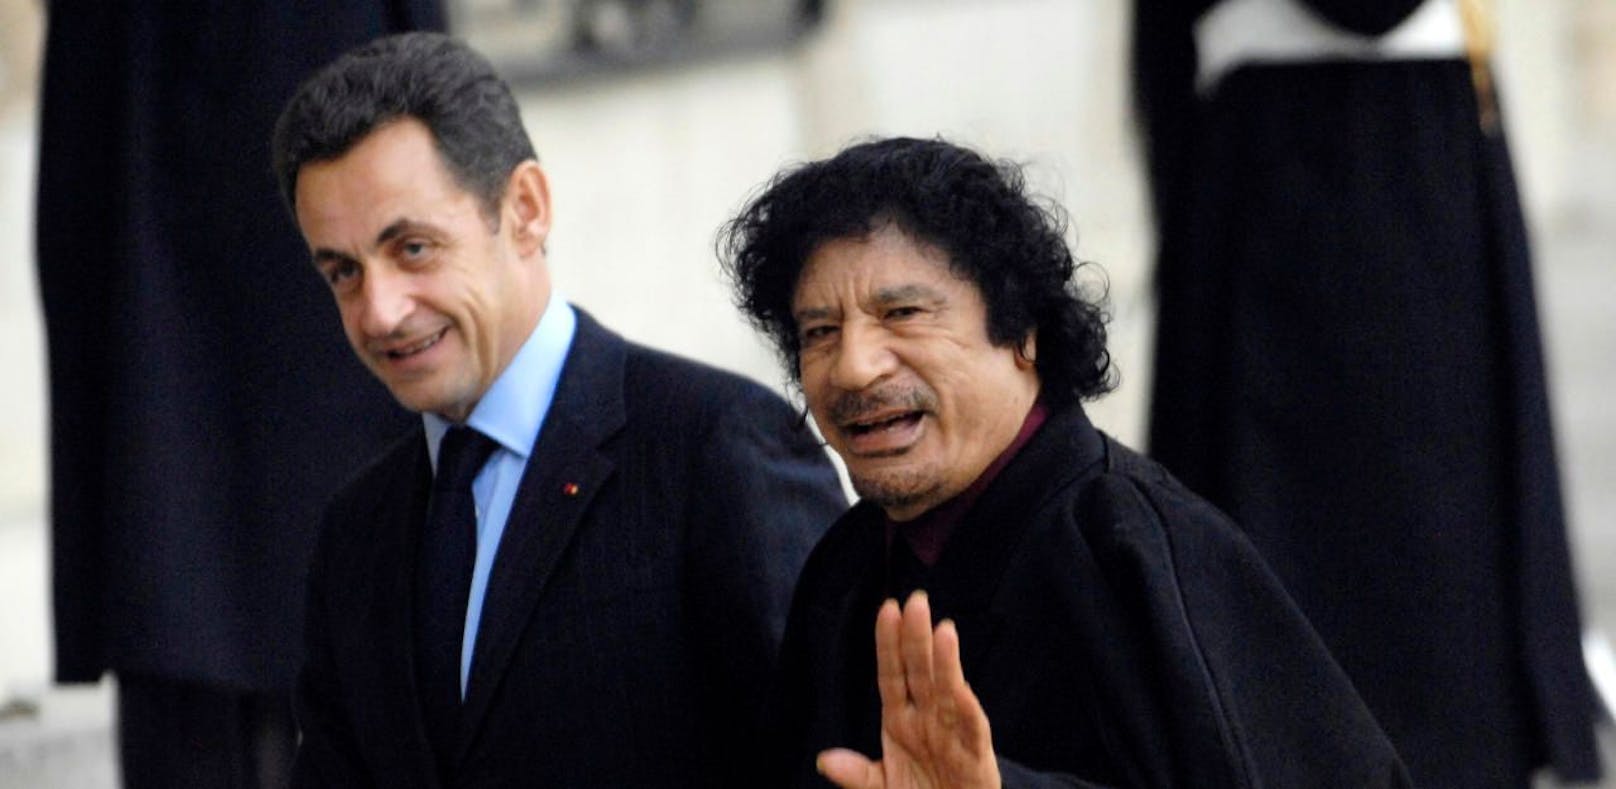 Strafverfahren gegen Ex-Präsident Sarkozy eröffnet